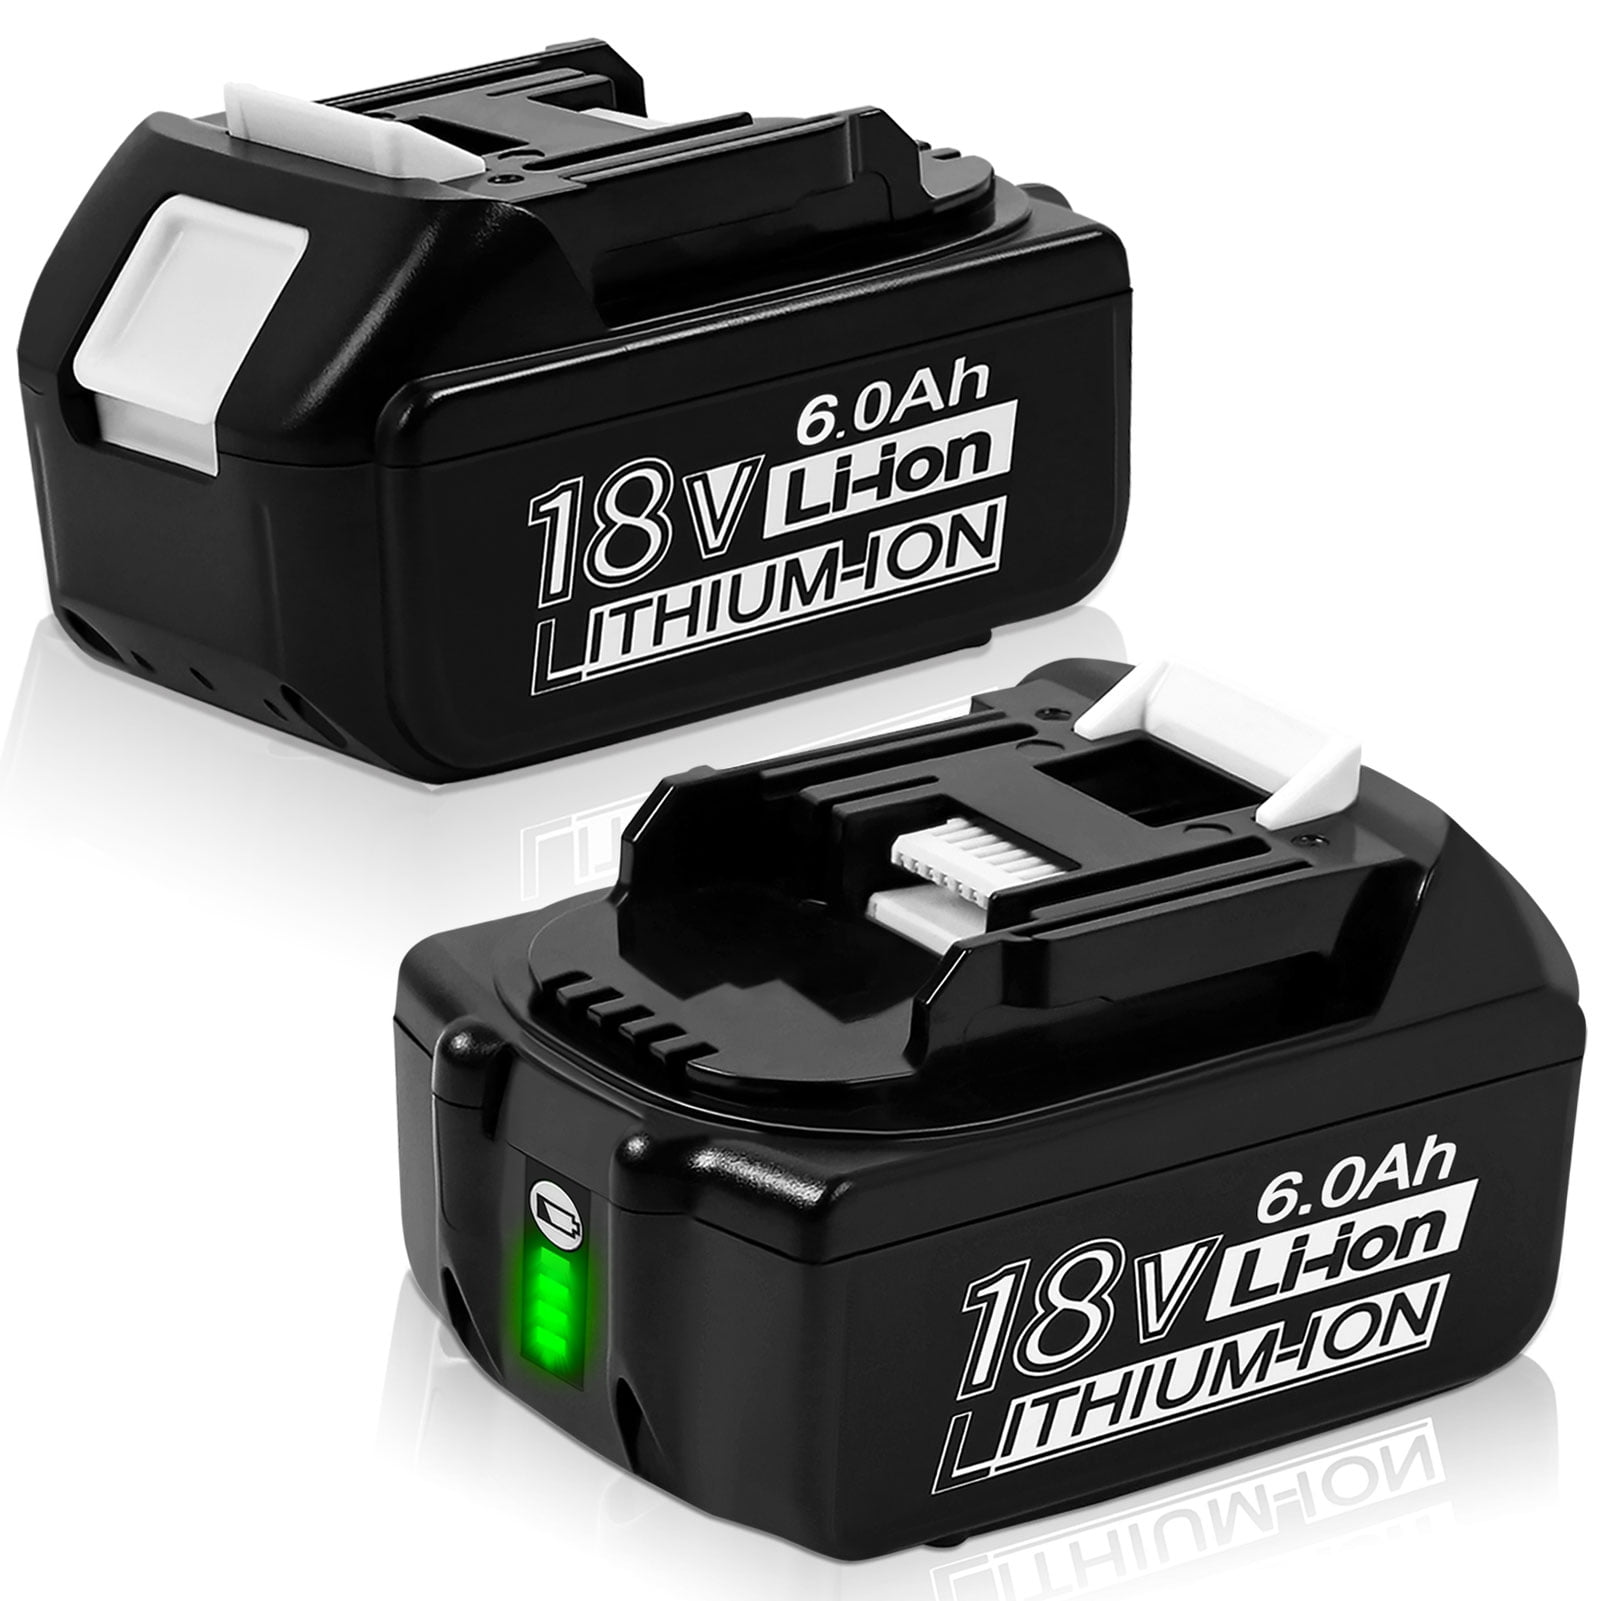 4X BL1860B 6AH Battery For Makita BL1850B BL1830 BL1860 LXT Li-Ion LED indicator